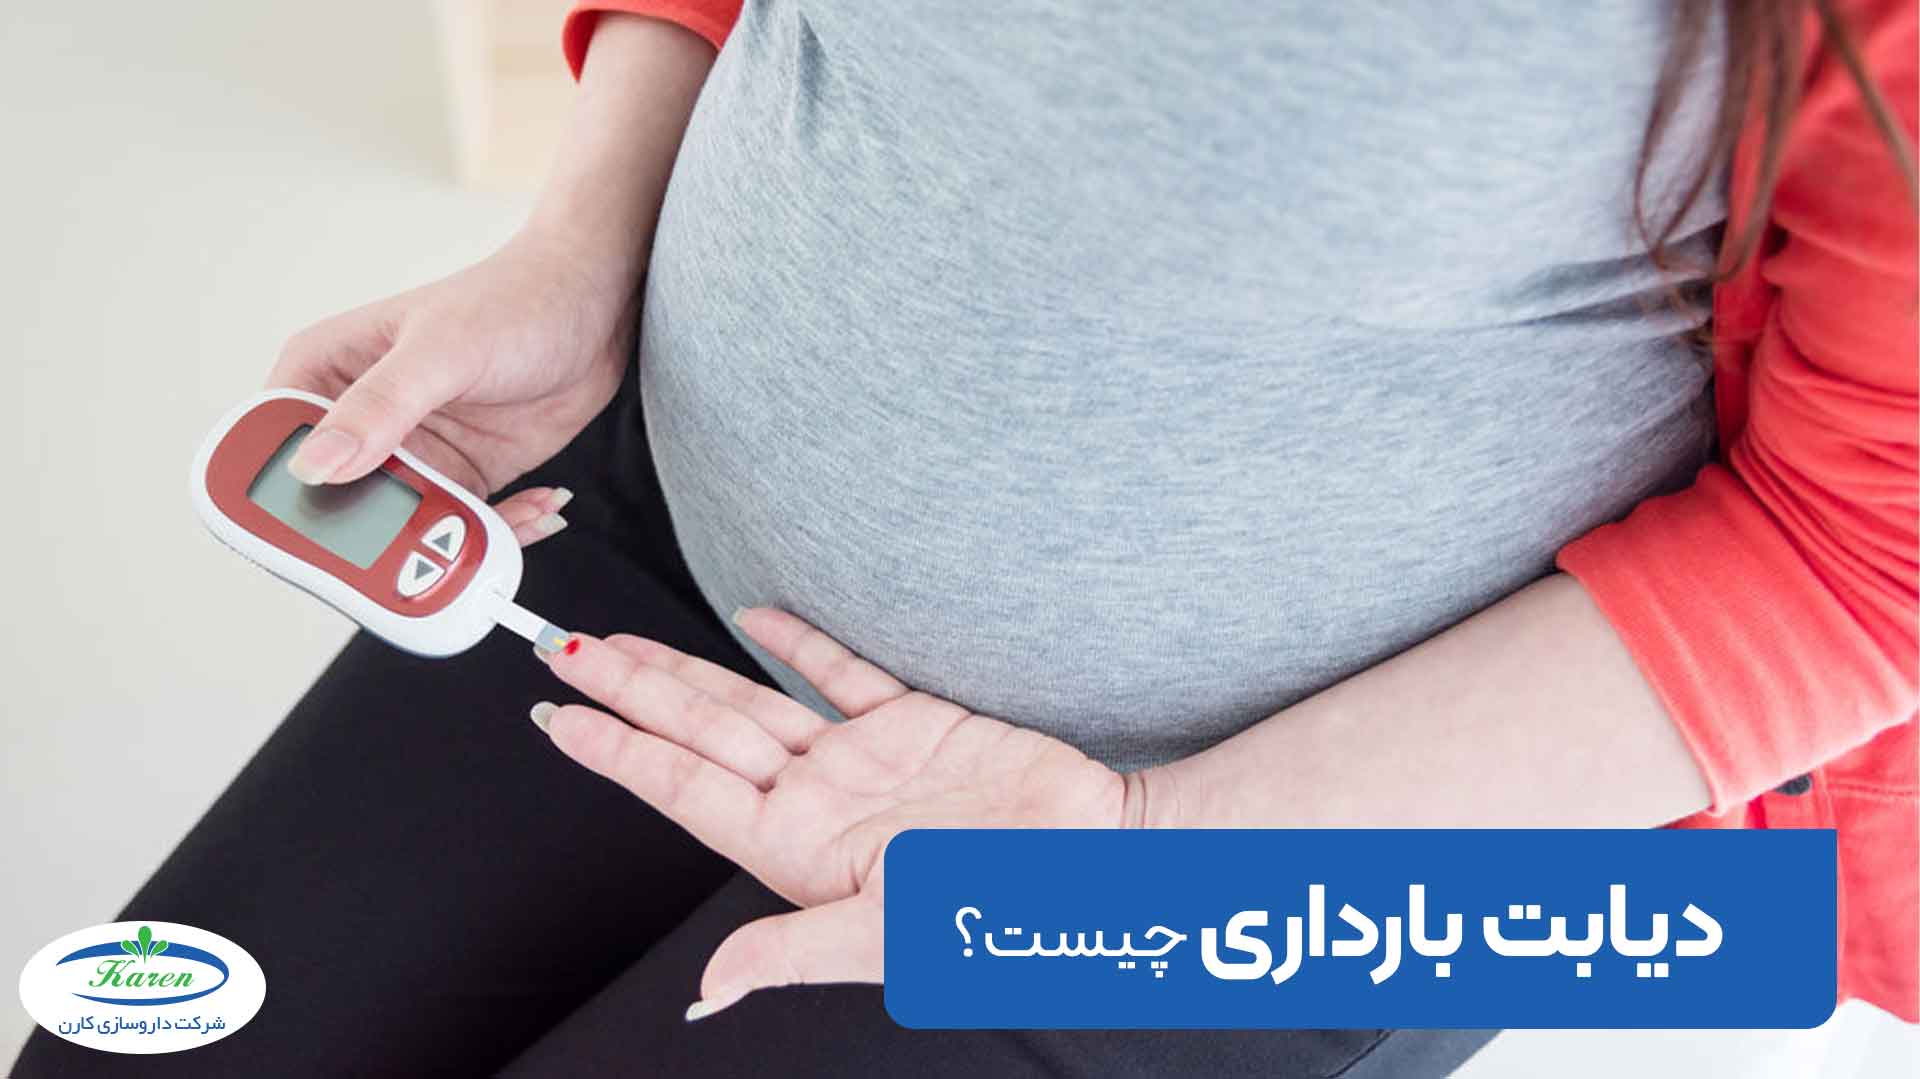 دیابت بارداری چیست و چه خطرهایی مادر را تهدید می کند؟